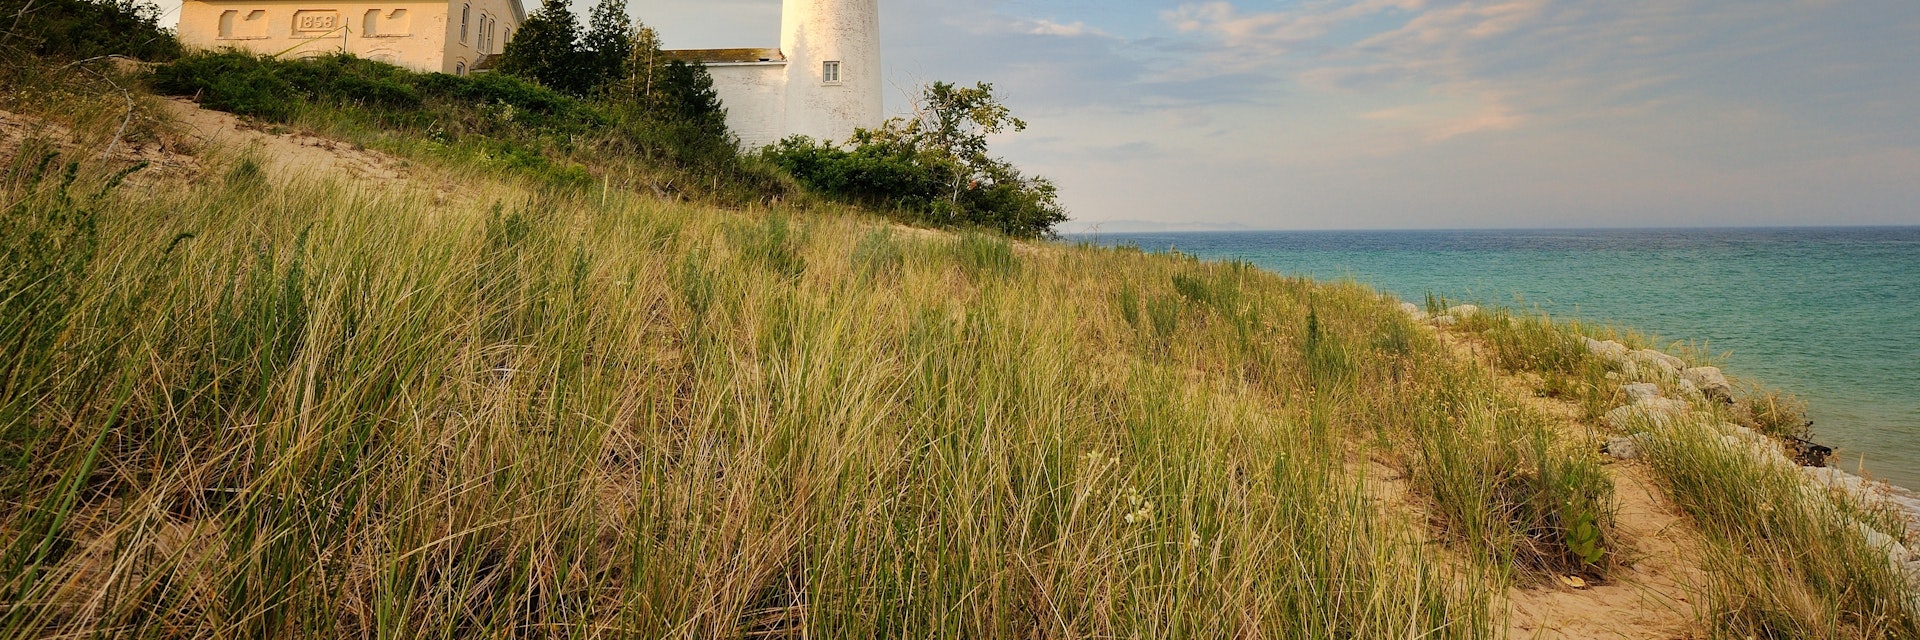 South Manitou Island Lighthouse, Sleeping Bear Dunes National Lakeshore. 